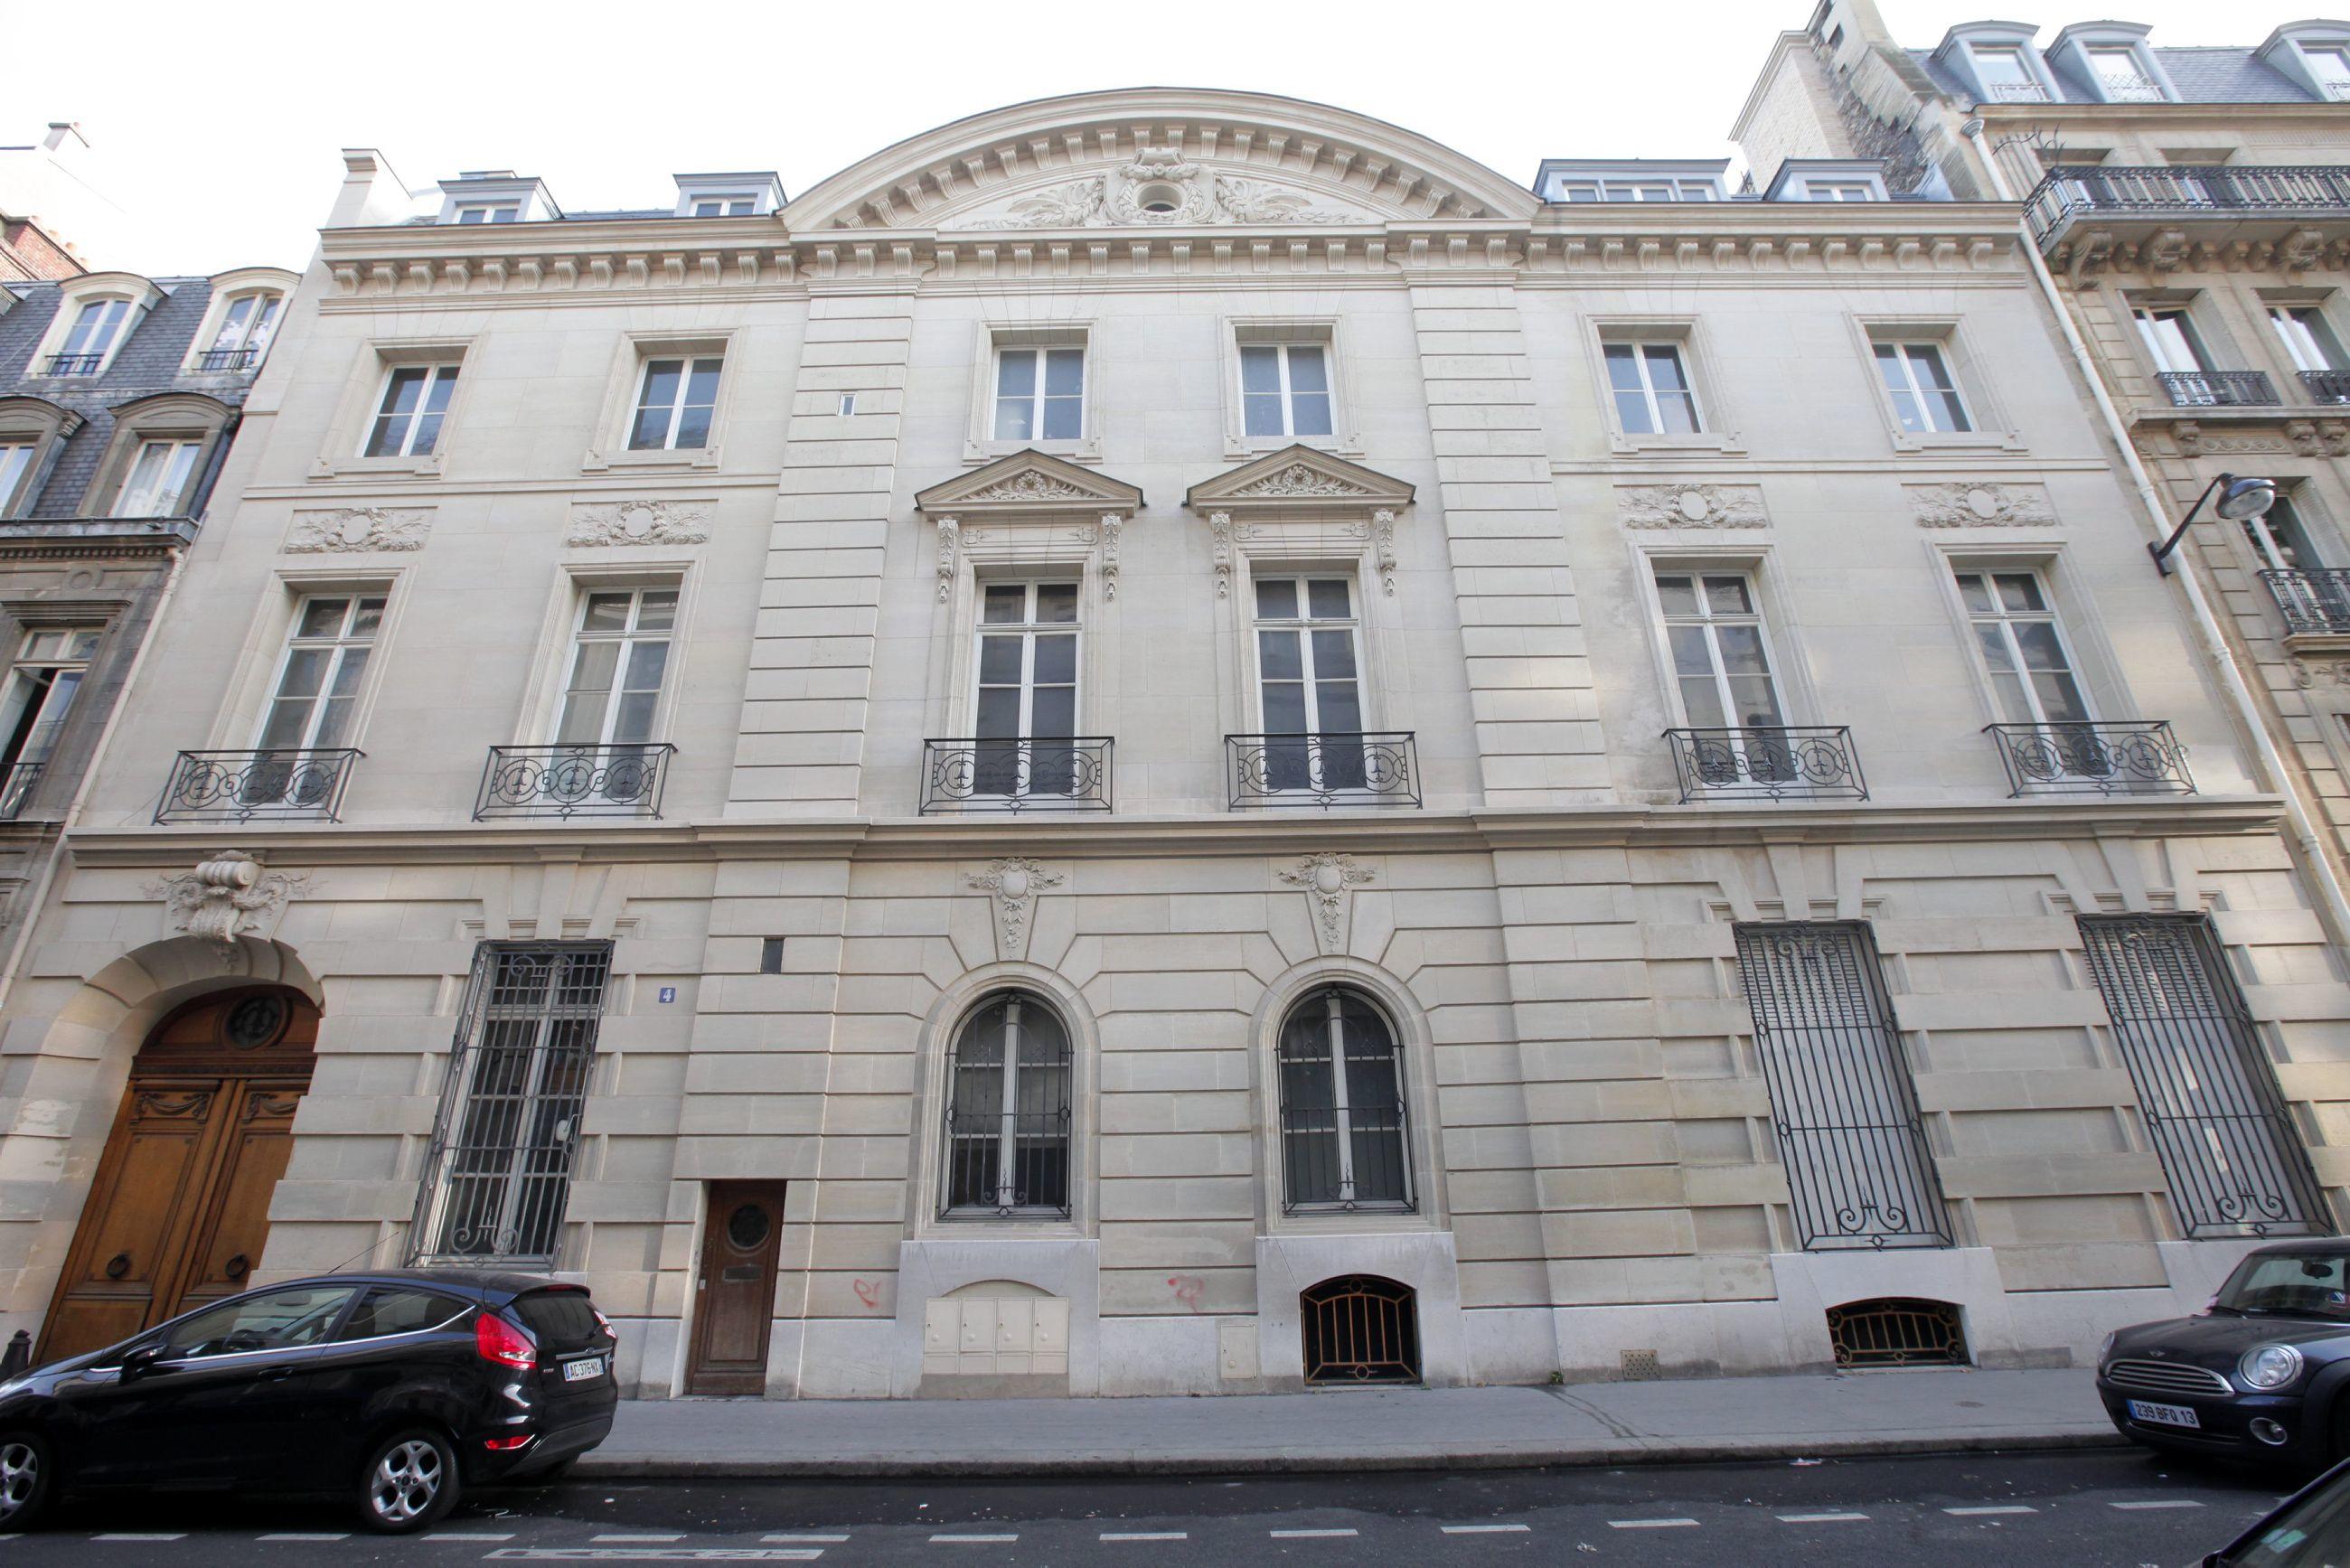 L'immeuble du 4 rue de la Baume (VIIIe) fait partie des « biens mal acquis » du clan Bongo saisis par la justice française. LP/Philippe Lavieille